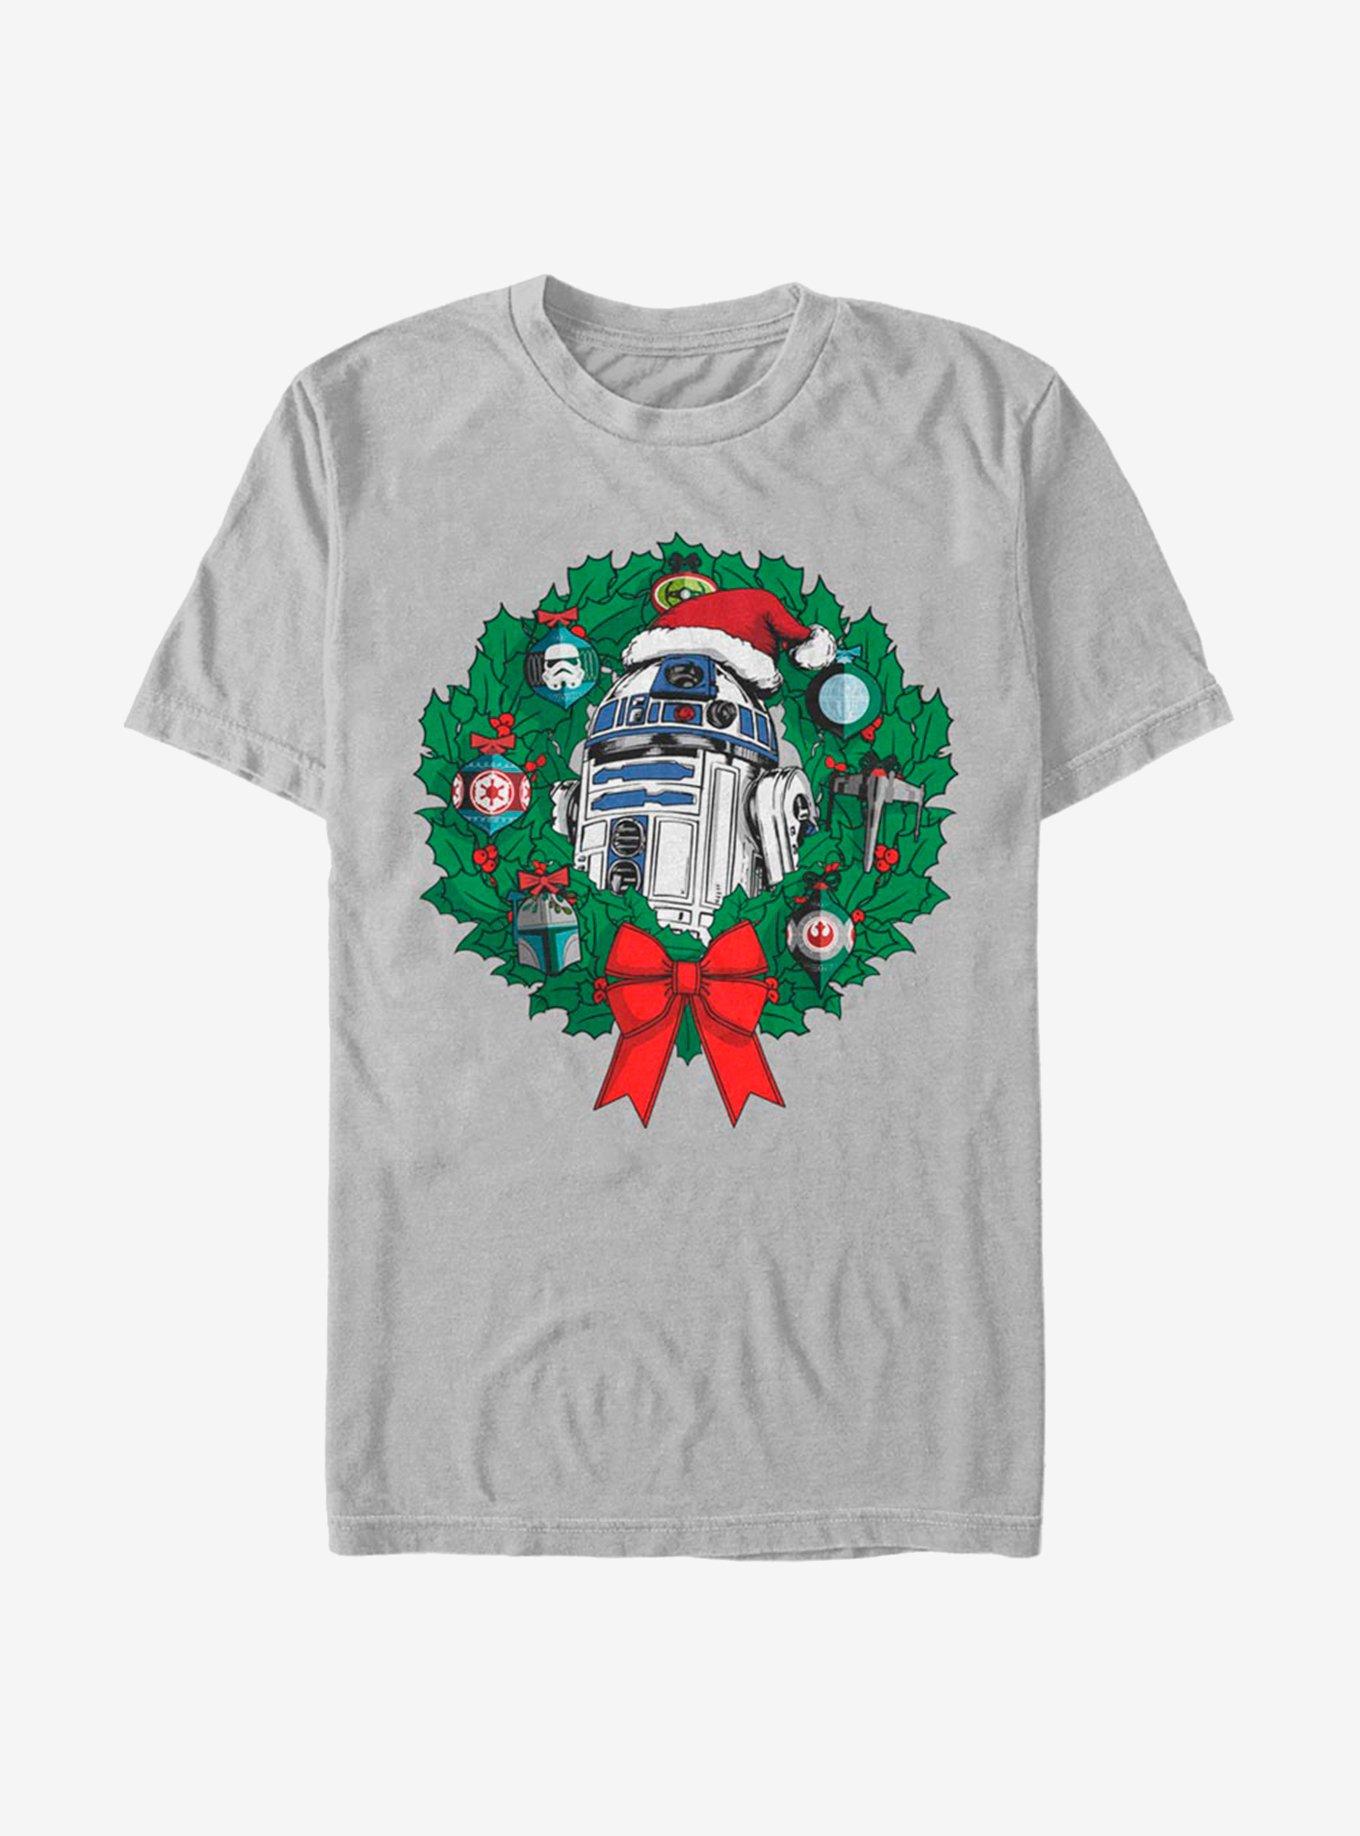 Star Wars Ornament Wreath T-Shirt, SILVER, hi-res